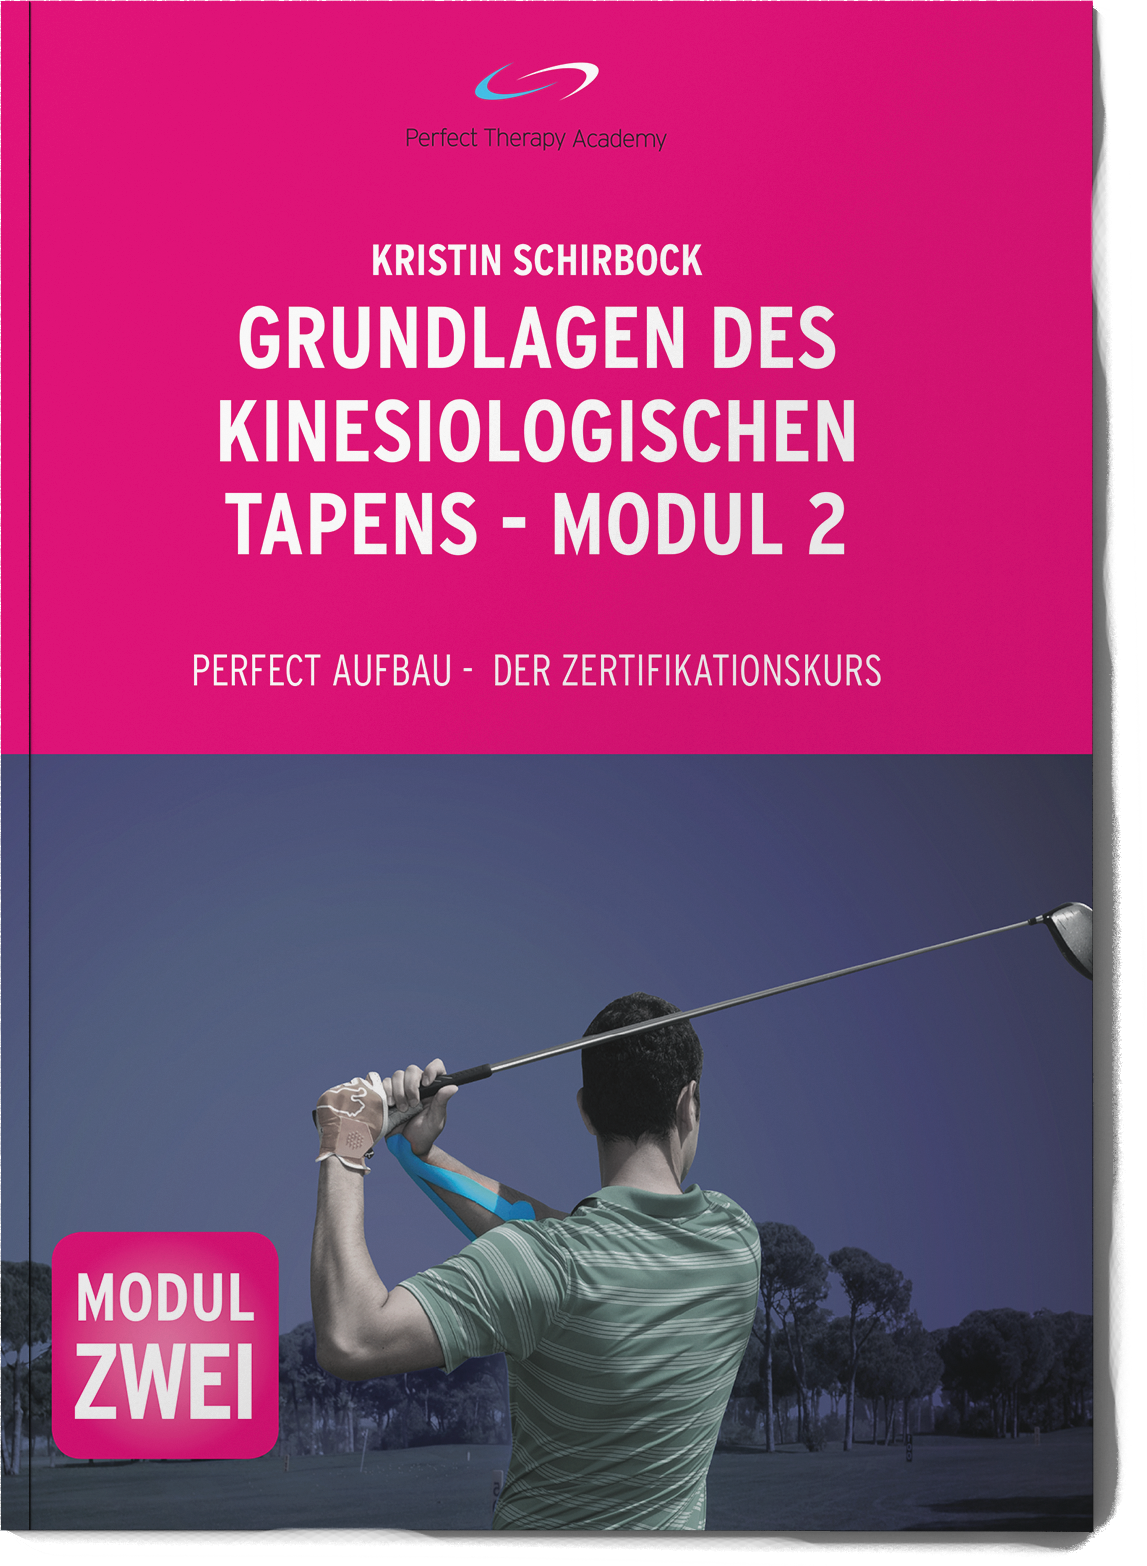 Kristin Schirbock - Grundlagen des Kinesiologischen Tapens - Modul 2 Buch Frontal